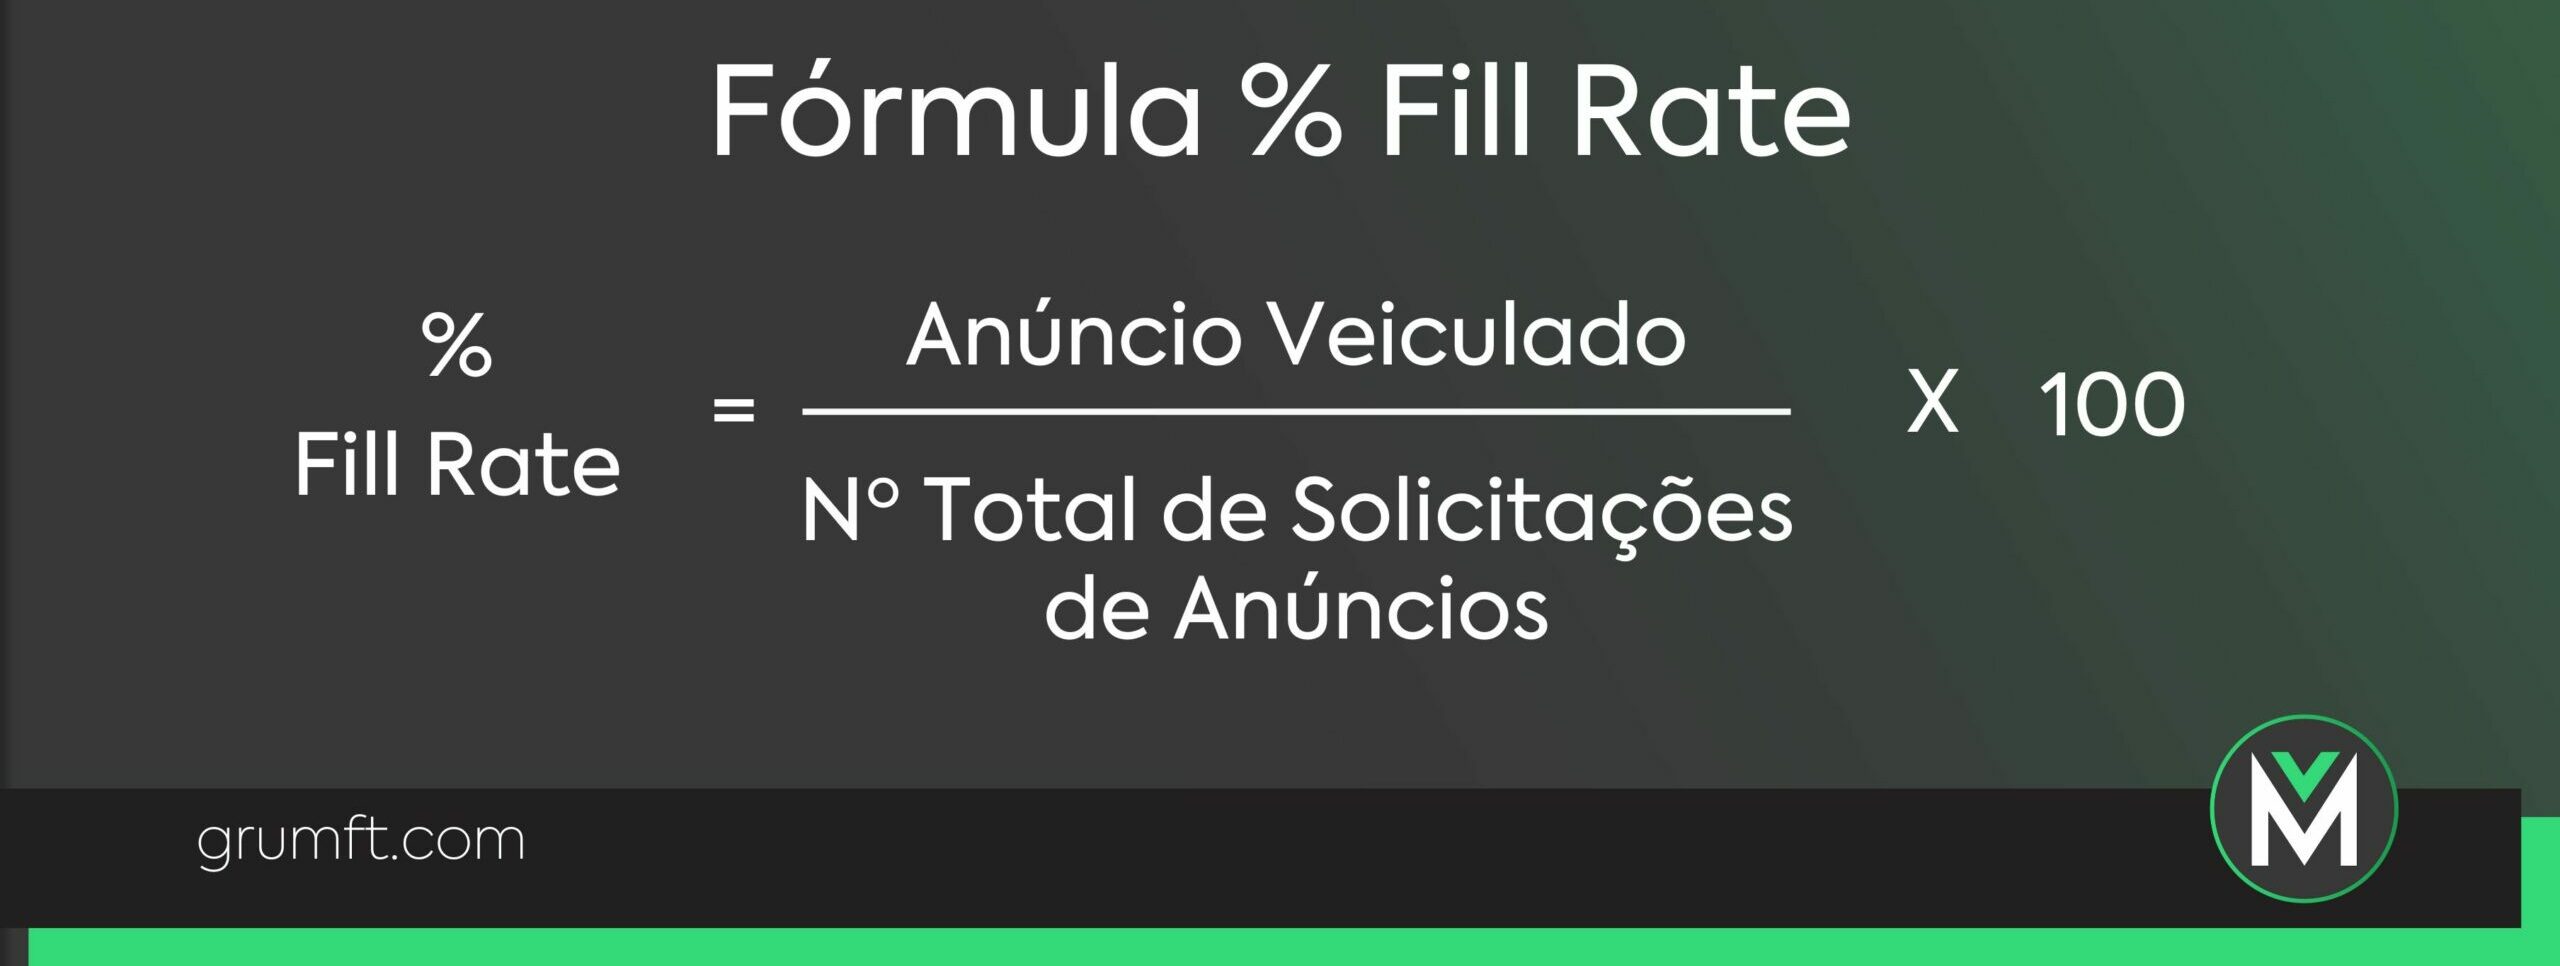 Fórmula % Fill Rate